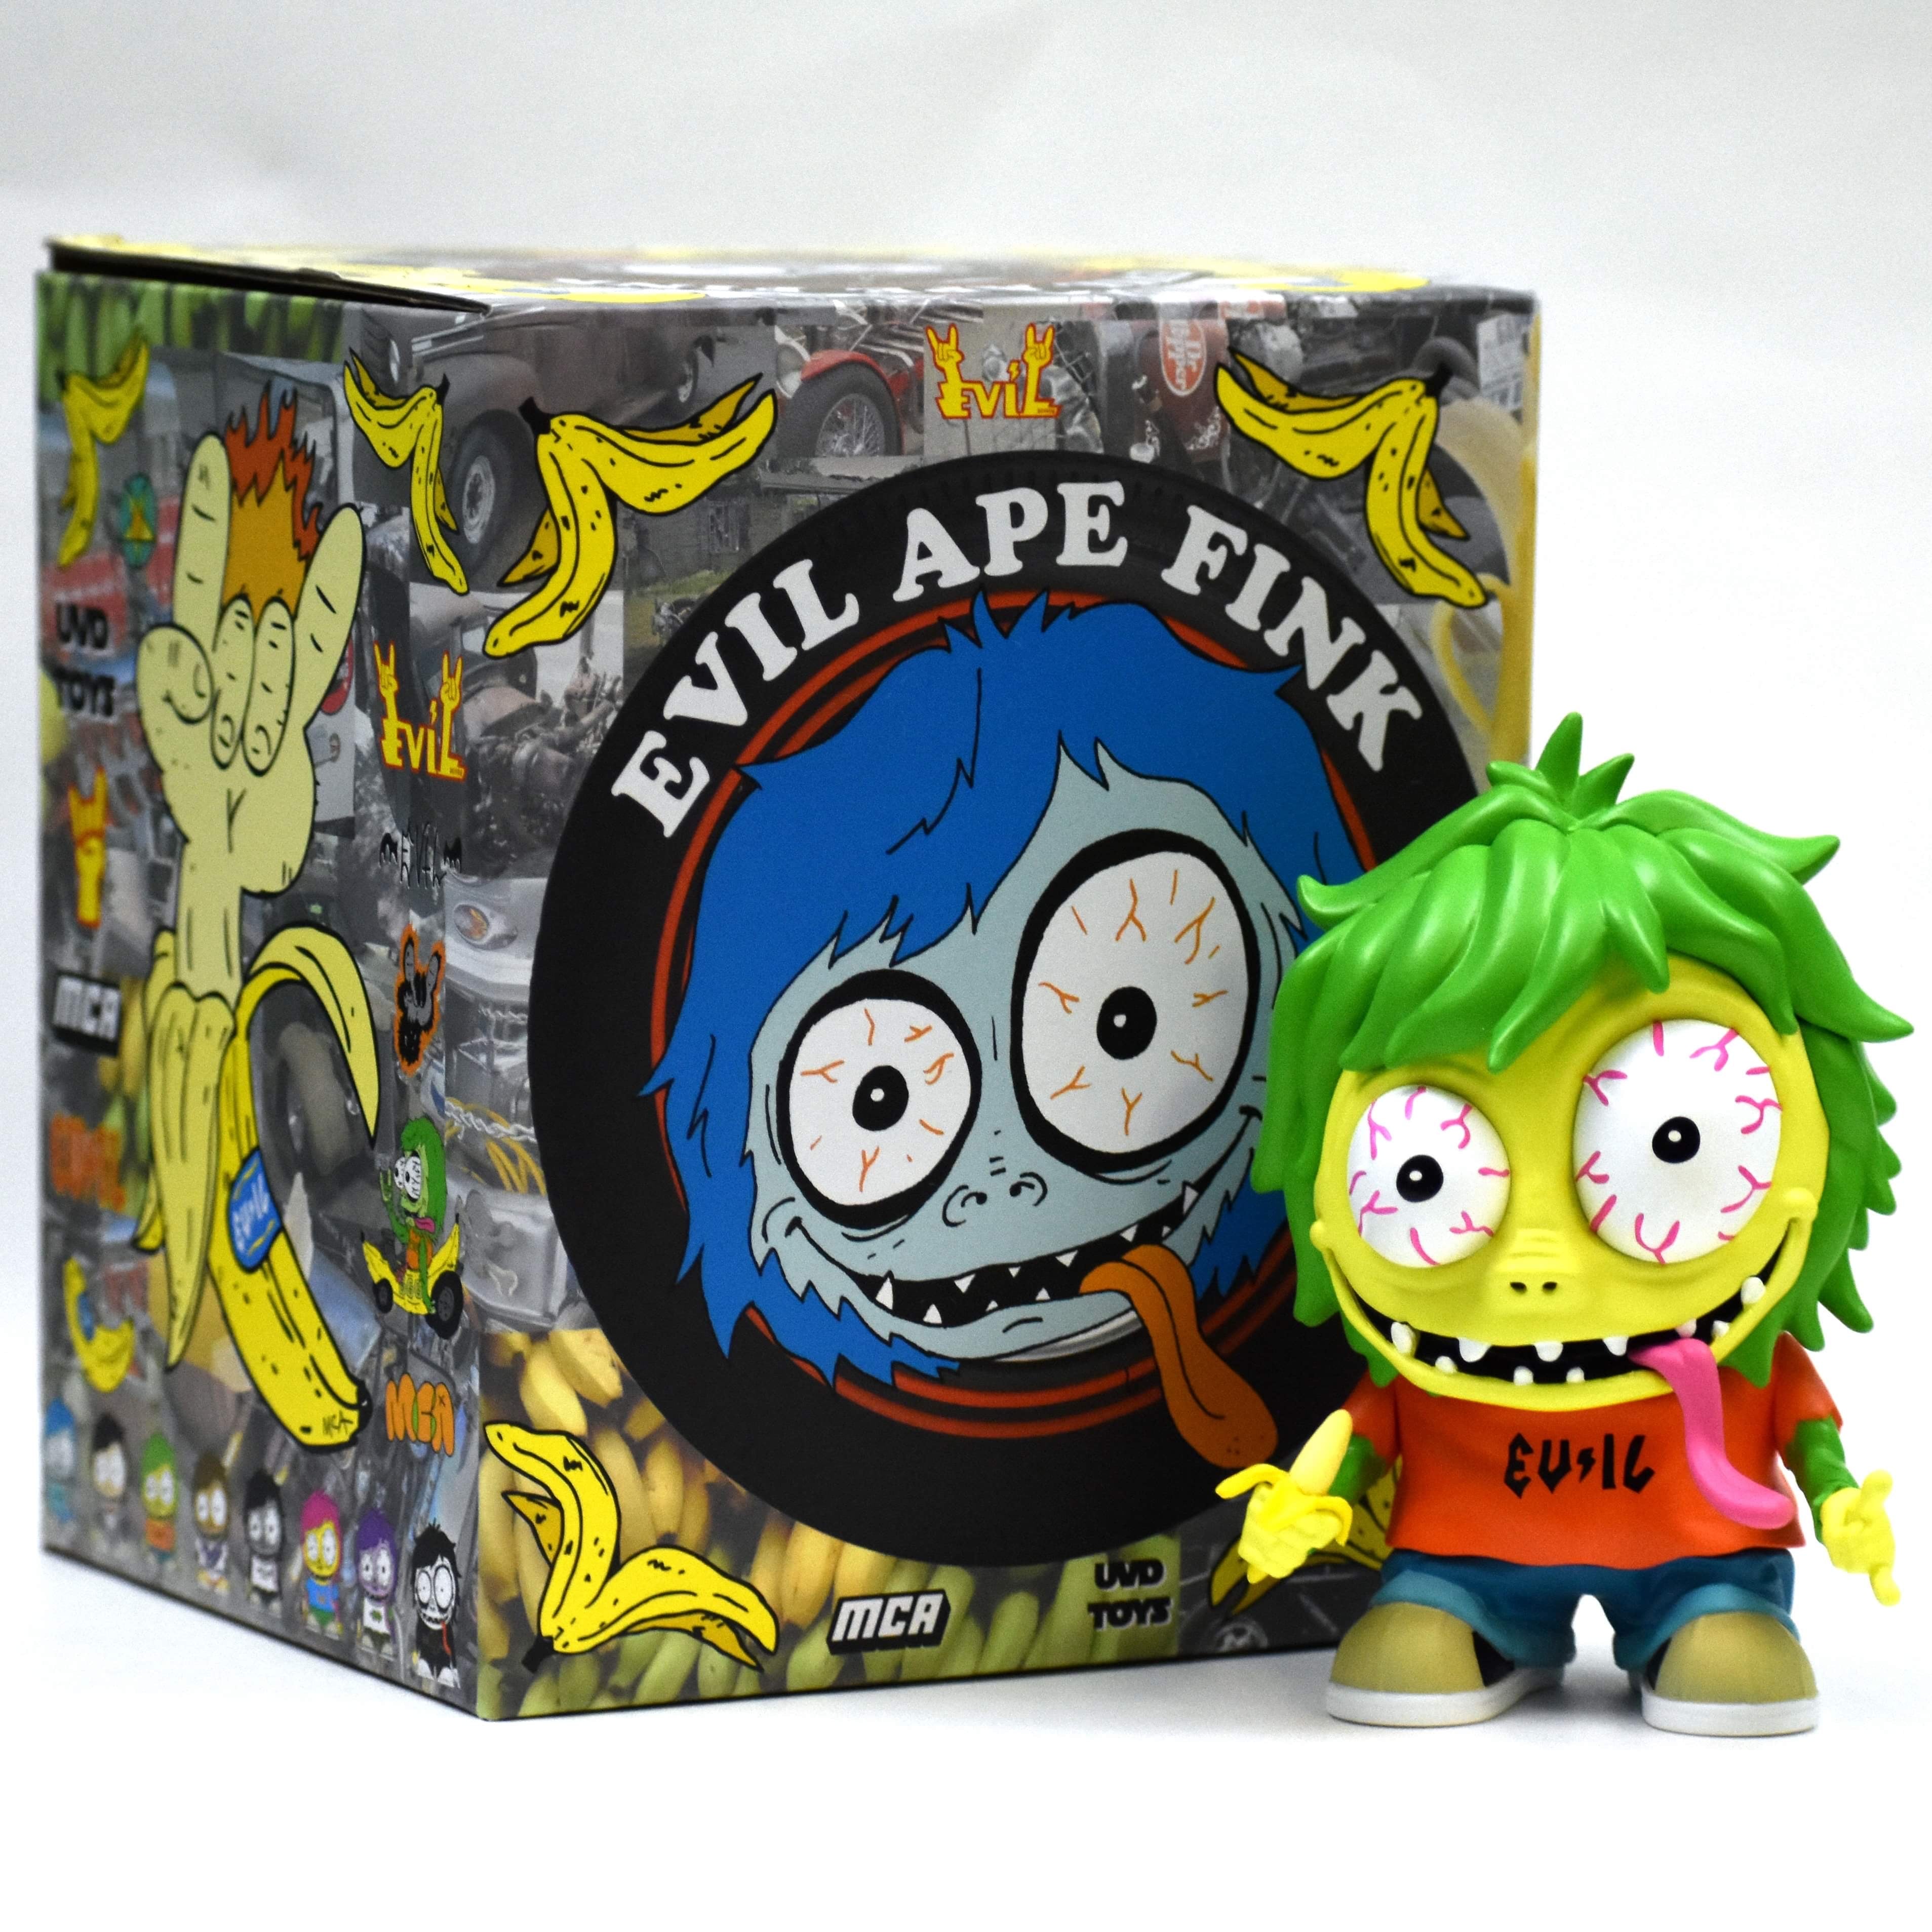 Evil Ape Fink "OG" Edition by MCA